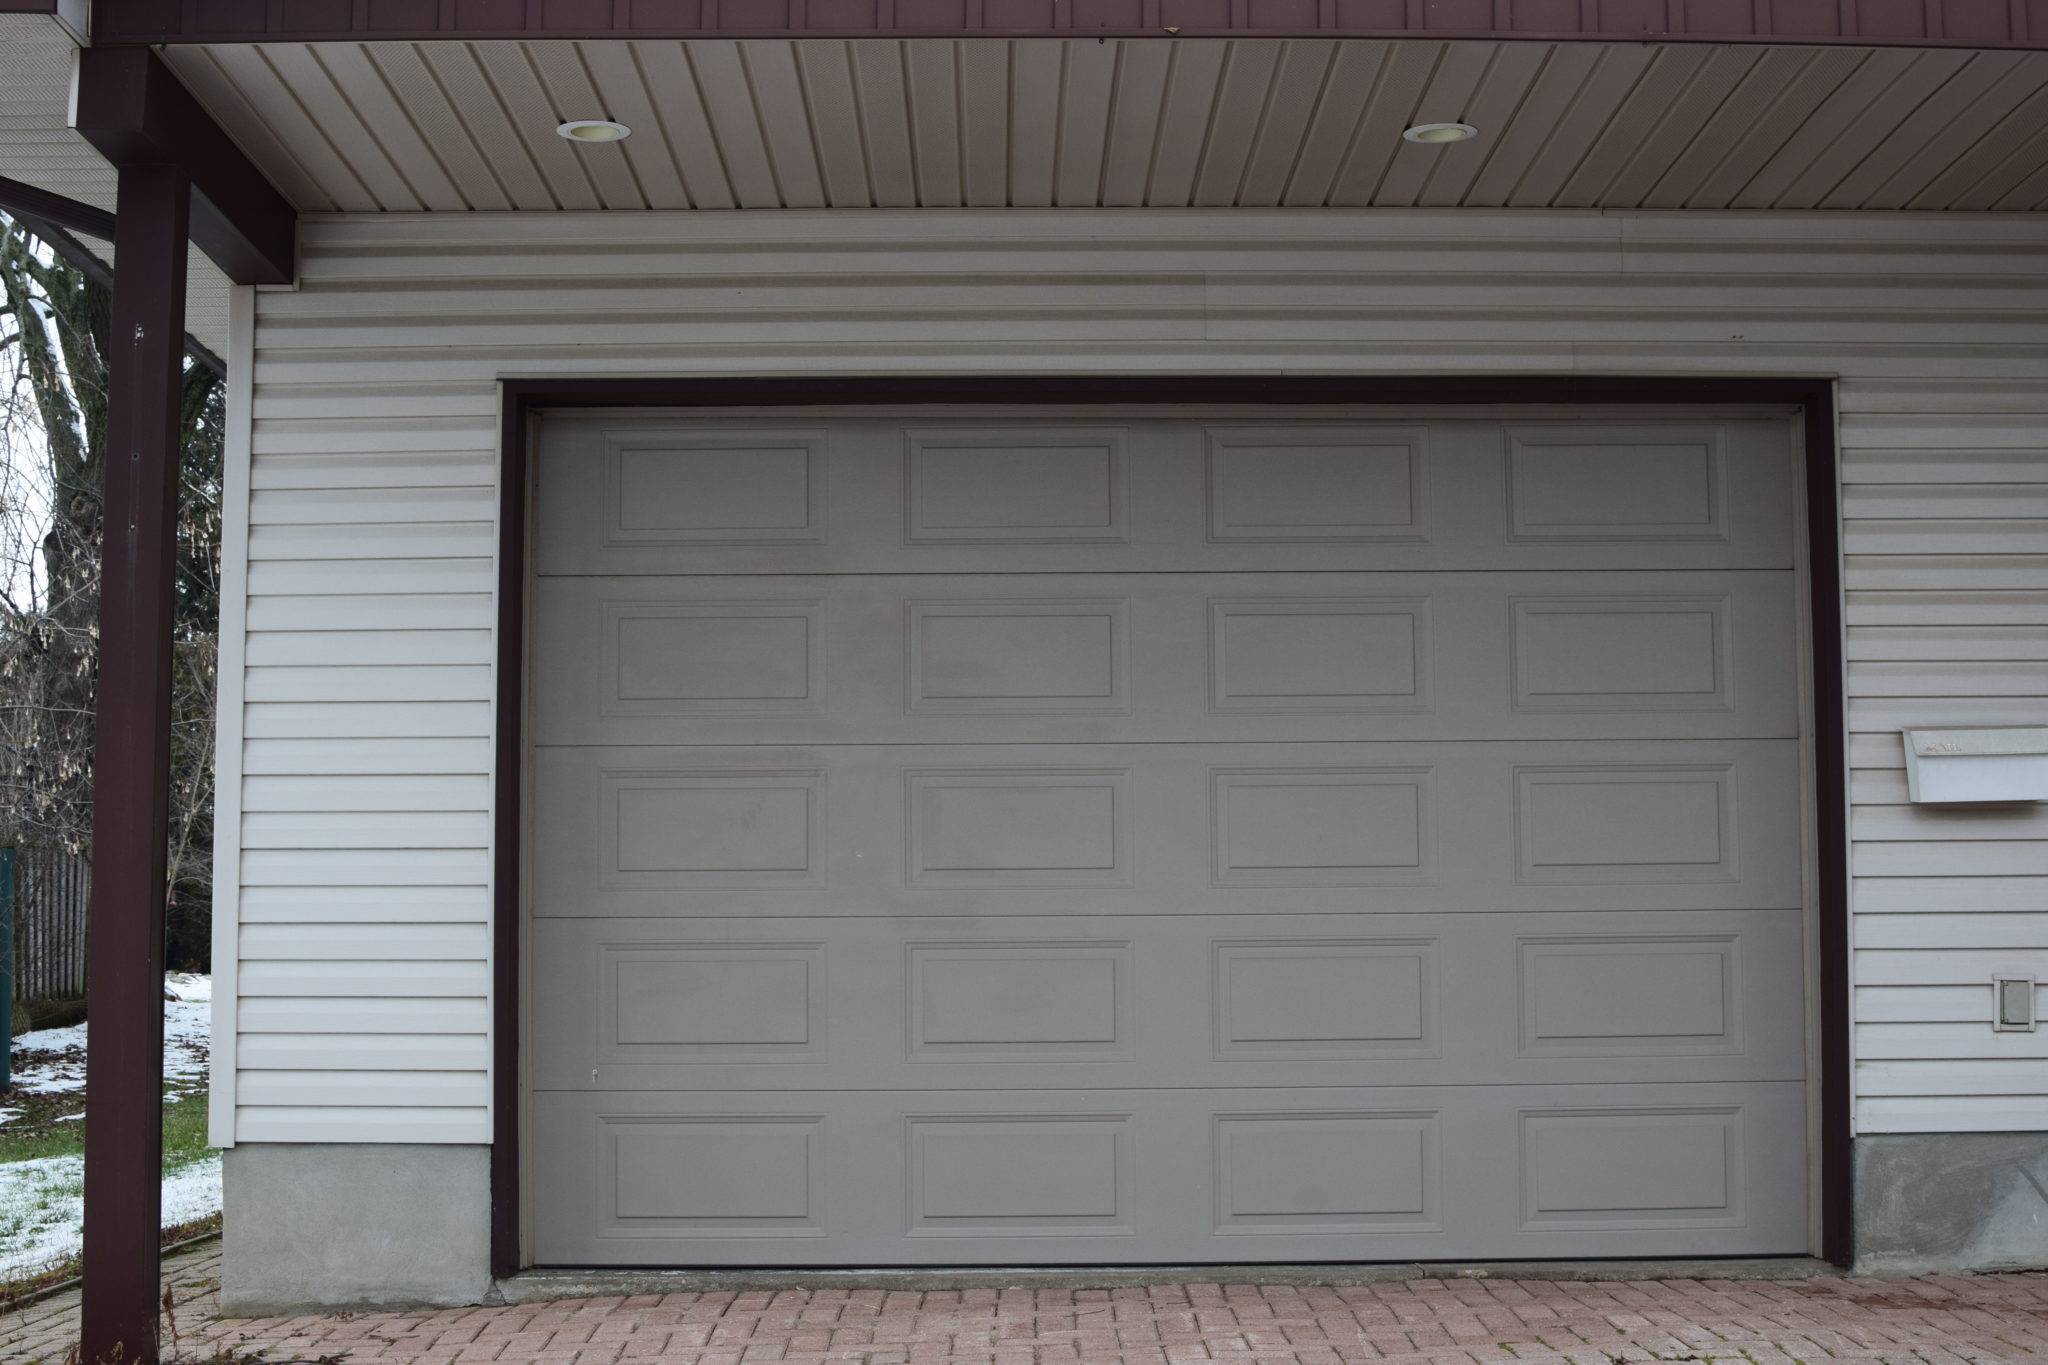  Garage Door Squeaking Fix with Modern Design